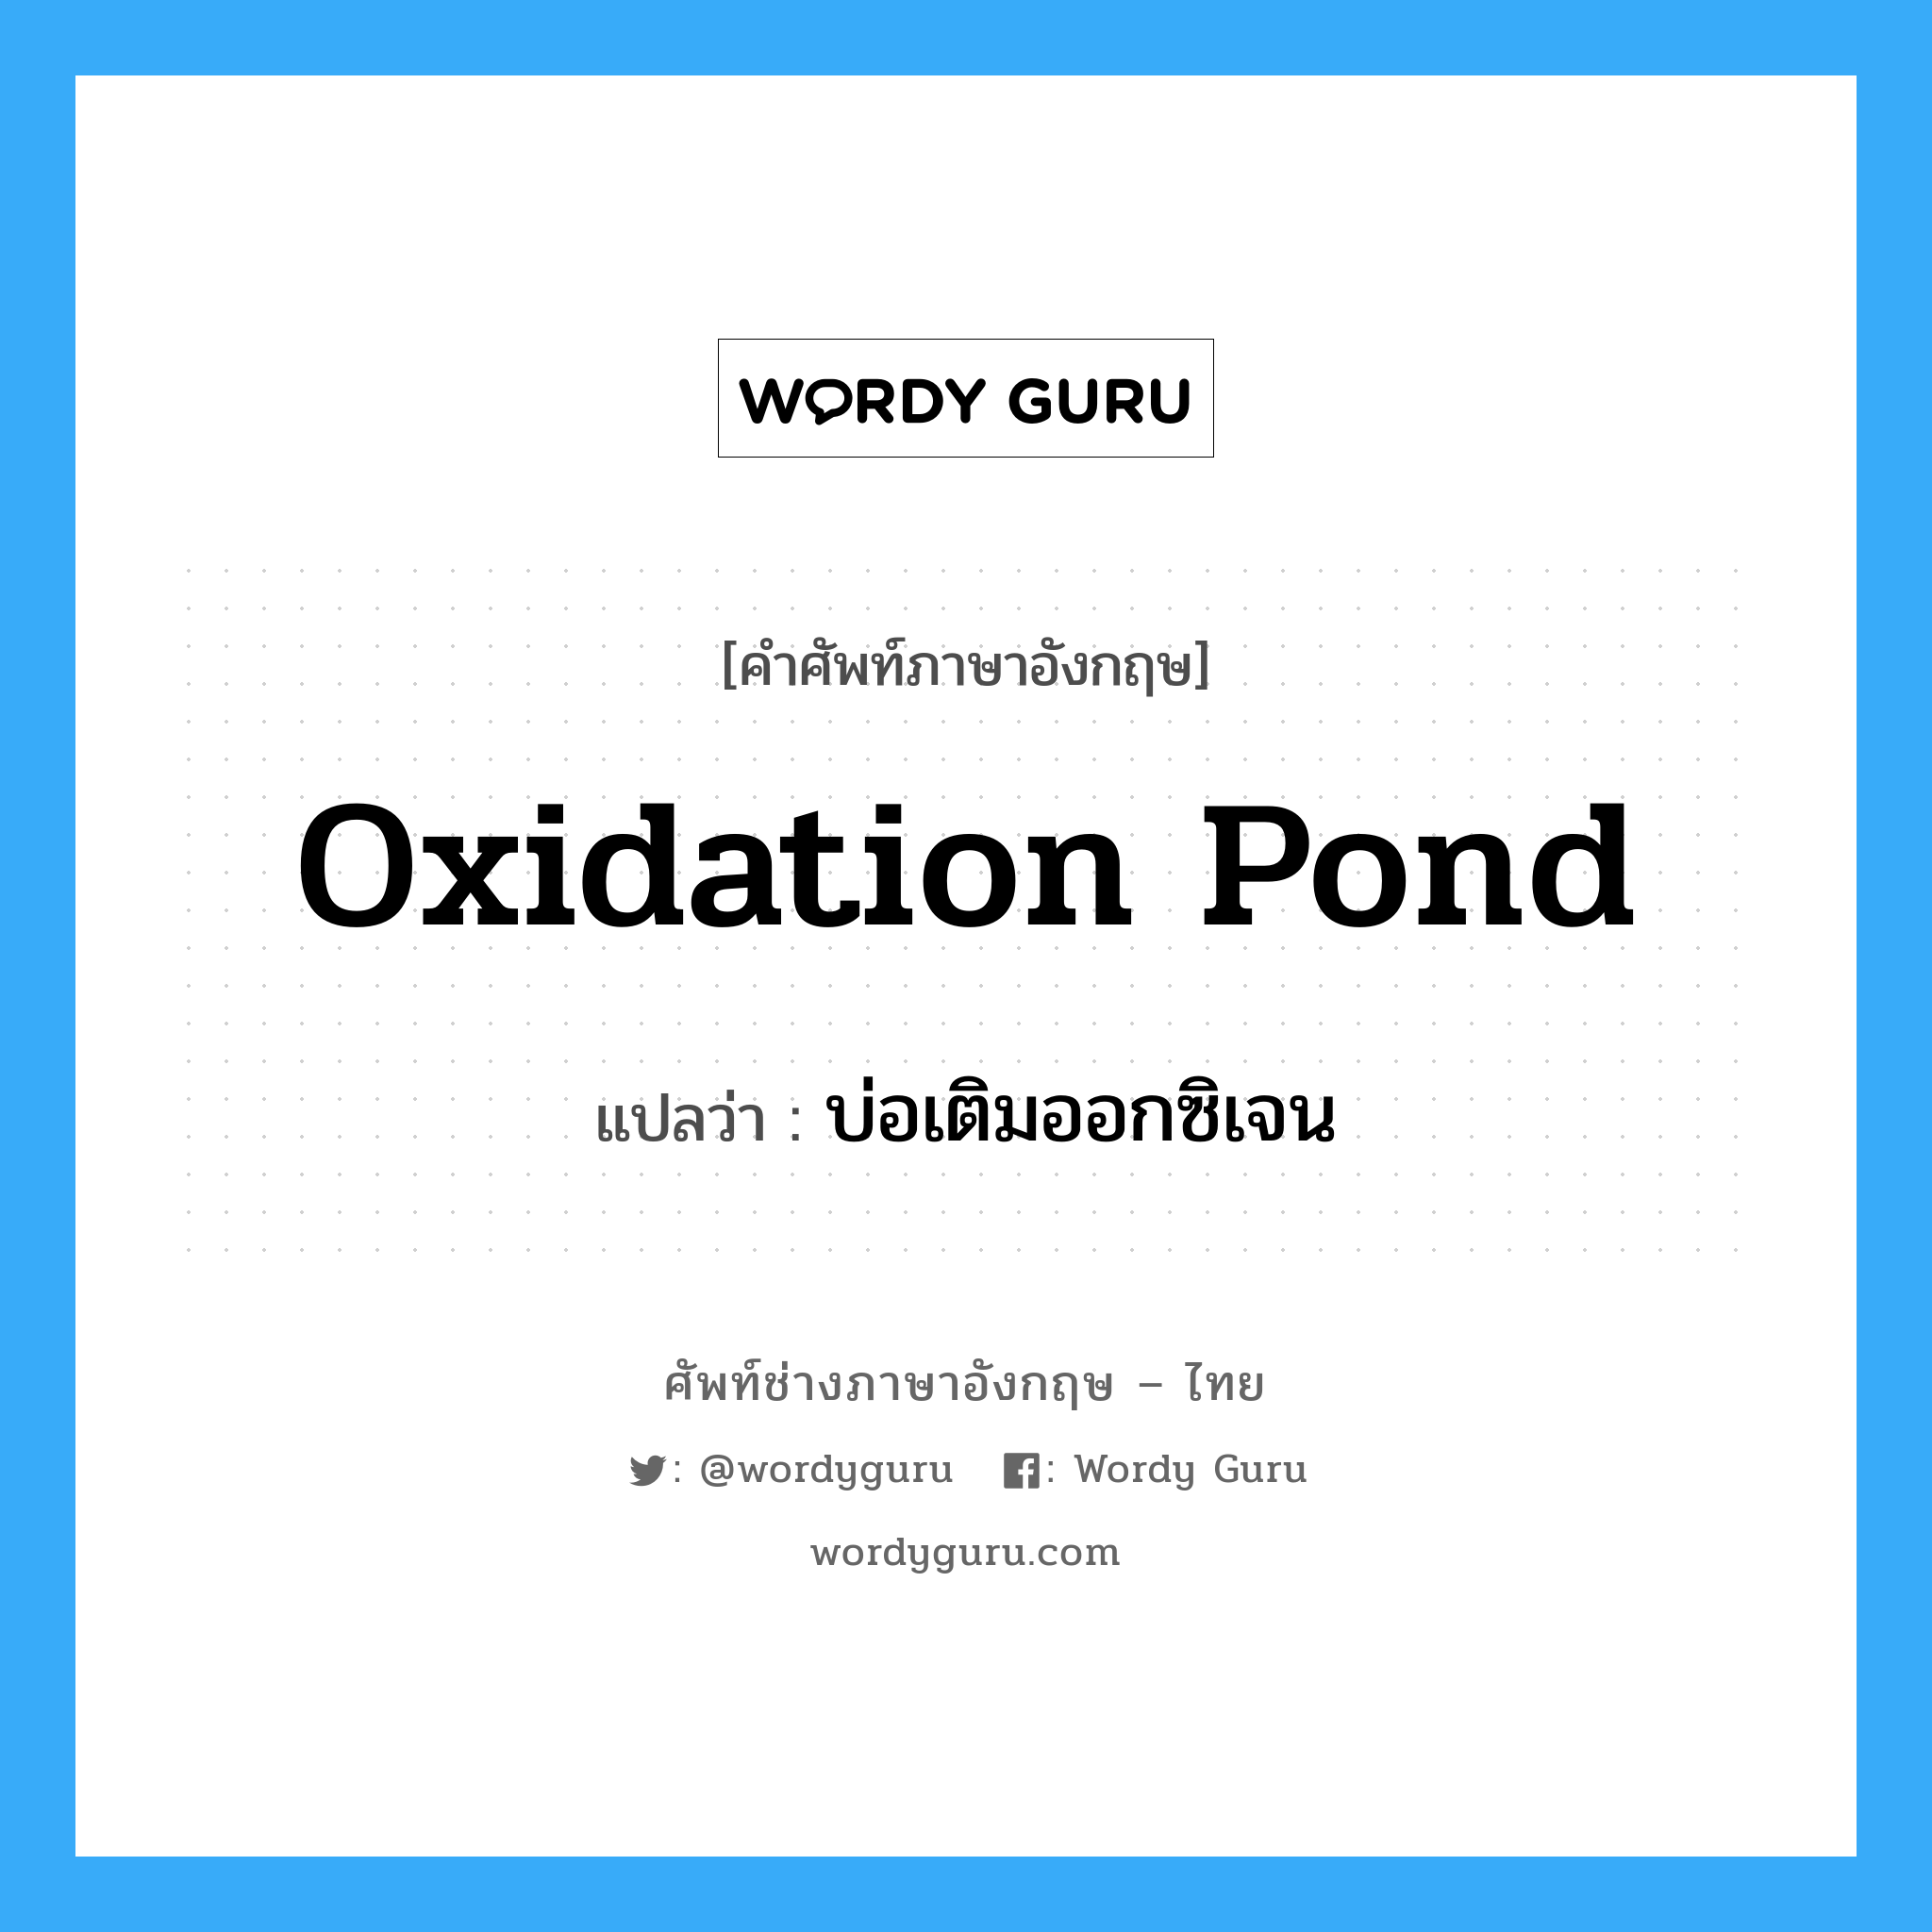 บ่อเติมออกซิเจน ภาษาอังกฤษ?, คำศัพท์ช่างภาษาอังกฤษ - ไทย บ่อเติมออกซิเจน คำศัพท์ภาษาอังกฤษ บ่อเติมออกซิเจน แปลว่า oxidation pond